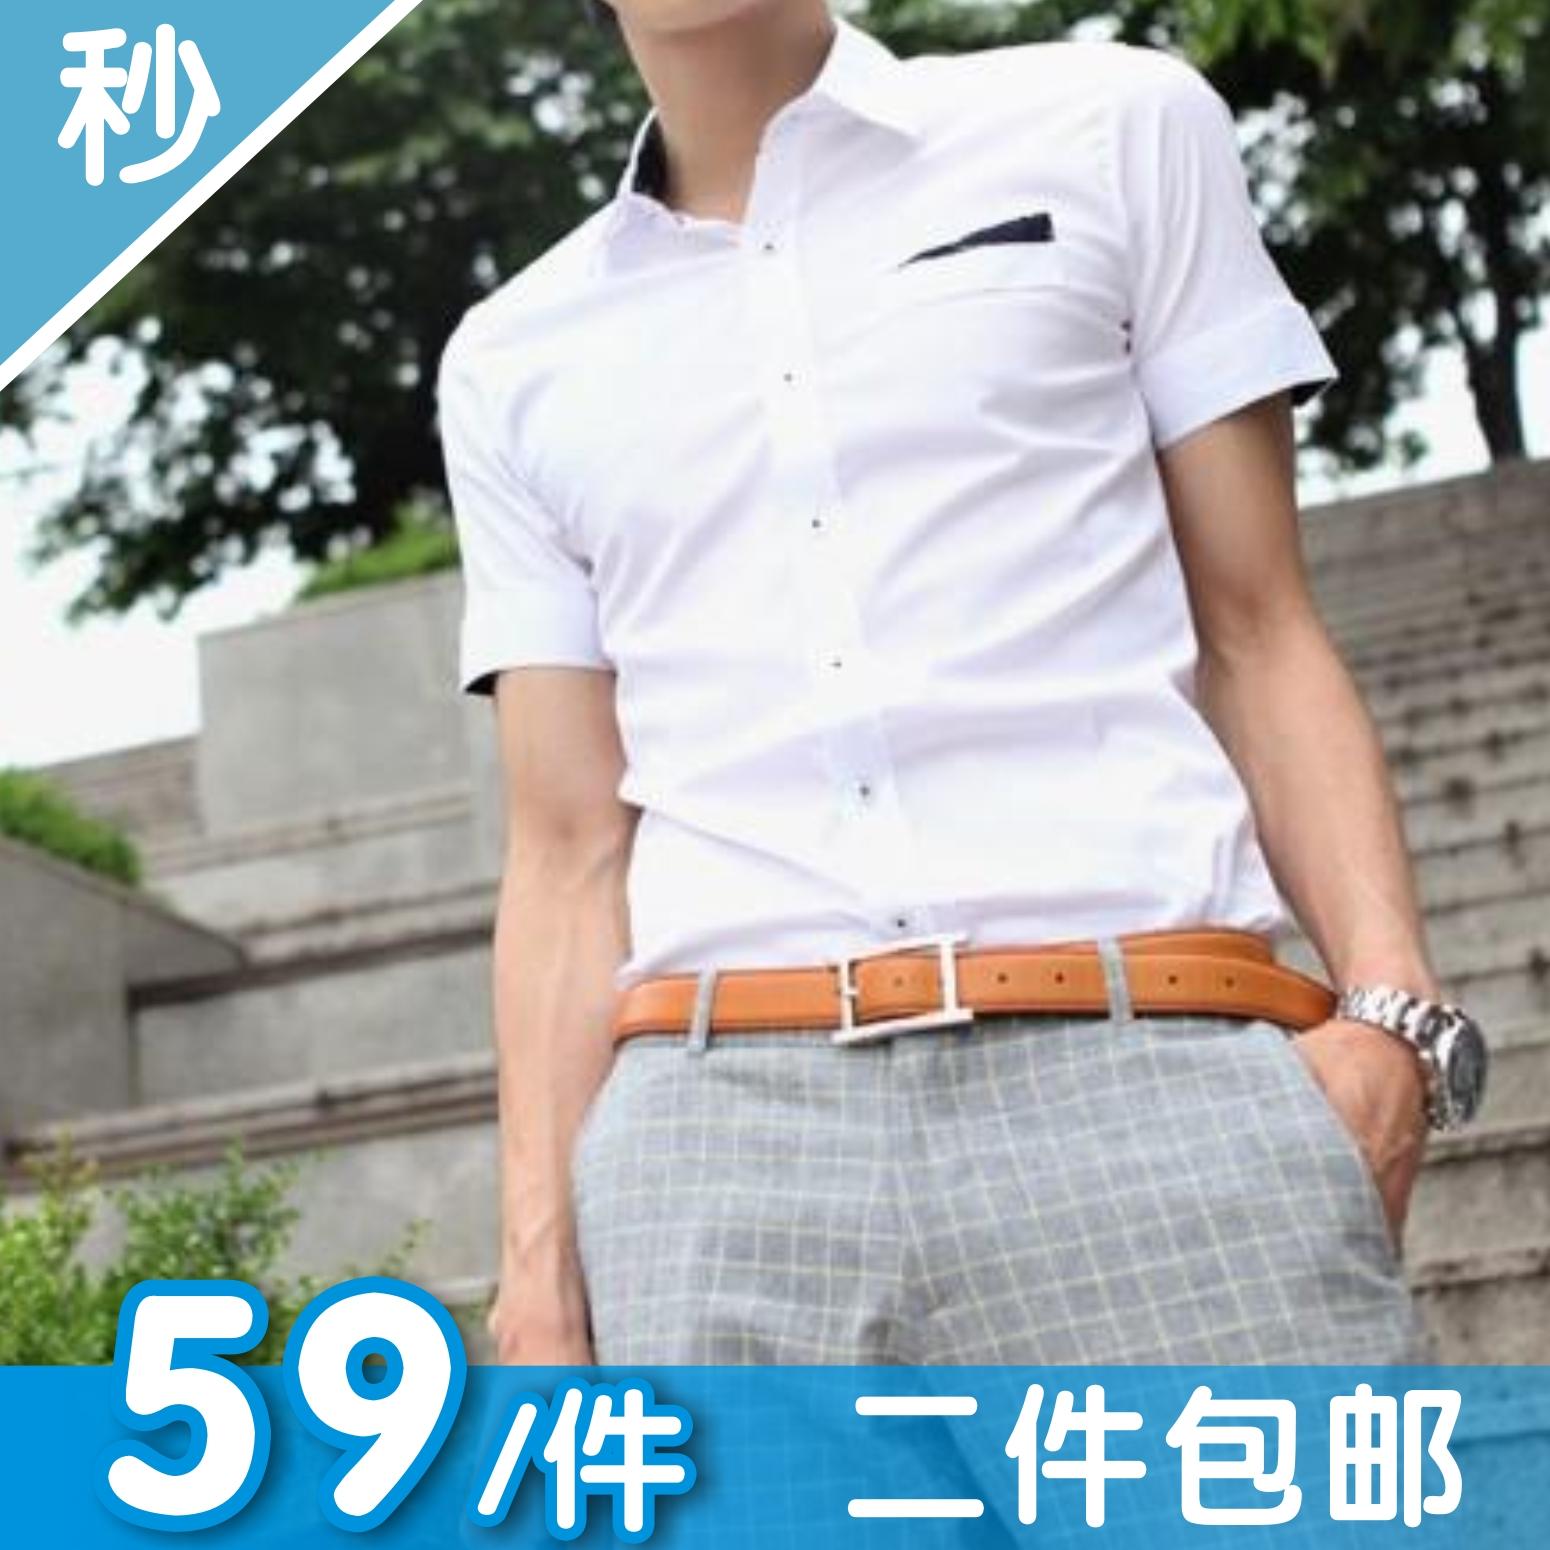 2015夏季韩版新款纯棉韩版英伦假口袋男士短袖衬衫修身衬衣男潮